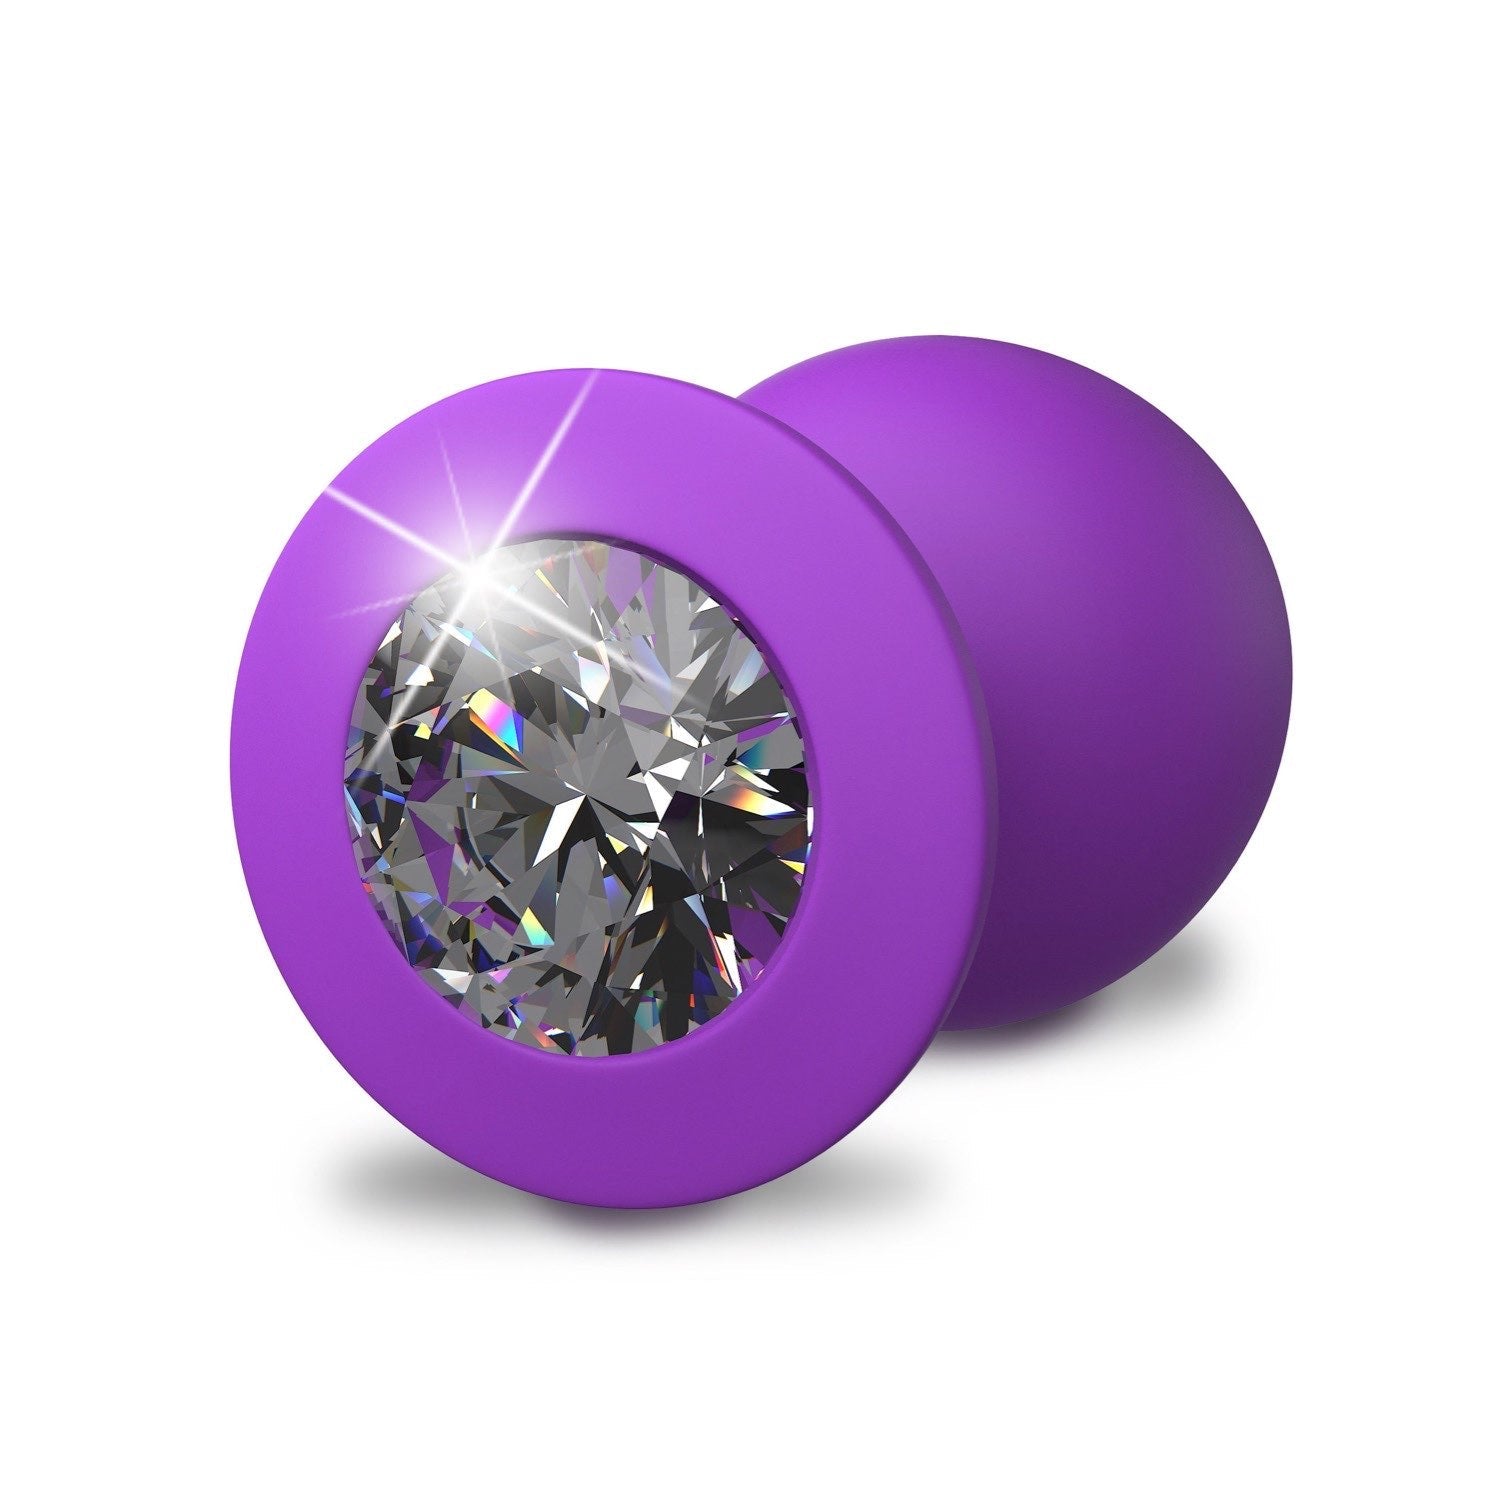 为她幻想 Little Gem 大插头 - 紫色 9.6 厘米对接插头，带宝石底座 by Pipedream